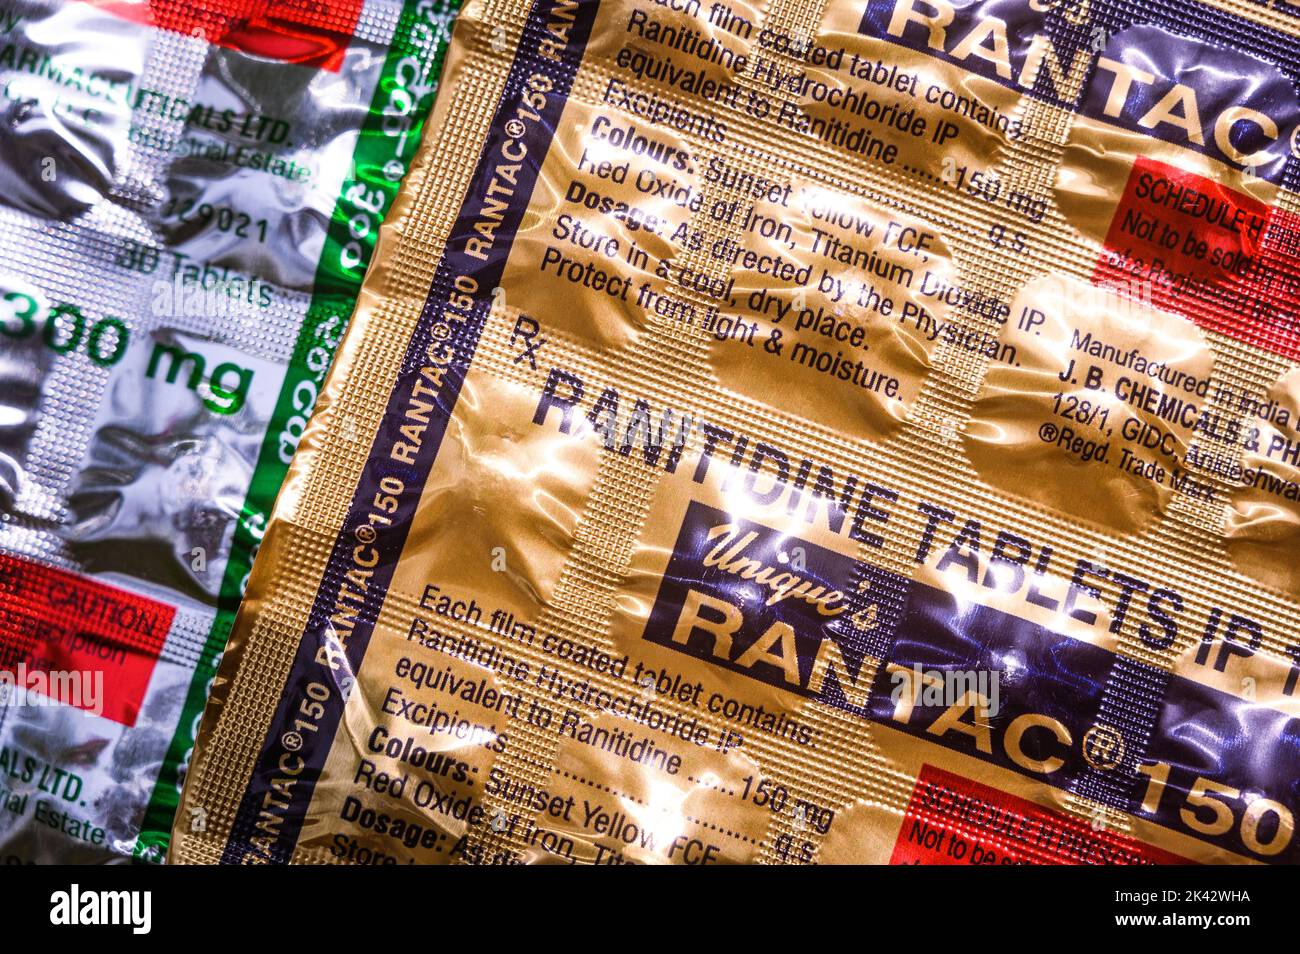 Le ministère indien de la Santé a retiré le populaire sel d'antiacide Ranitidine de la liste nationale des médicaments essentiels (NLEM) au sujet des préoccupations d'impureté causant le cancer N-nitrosodiméthylamine (NDMA). Ranitidine est populairement vendu sous le nom de marque Rantac et est l'antiacide le plus couramment prescrit pour l'acidité et les problèmes d'estomac liés à la douleur en Inde. Tehatta, Bengale occidental ; Inde. Banque D'Images